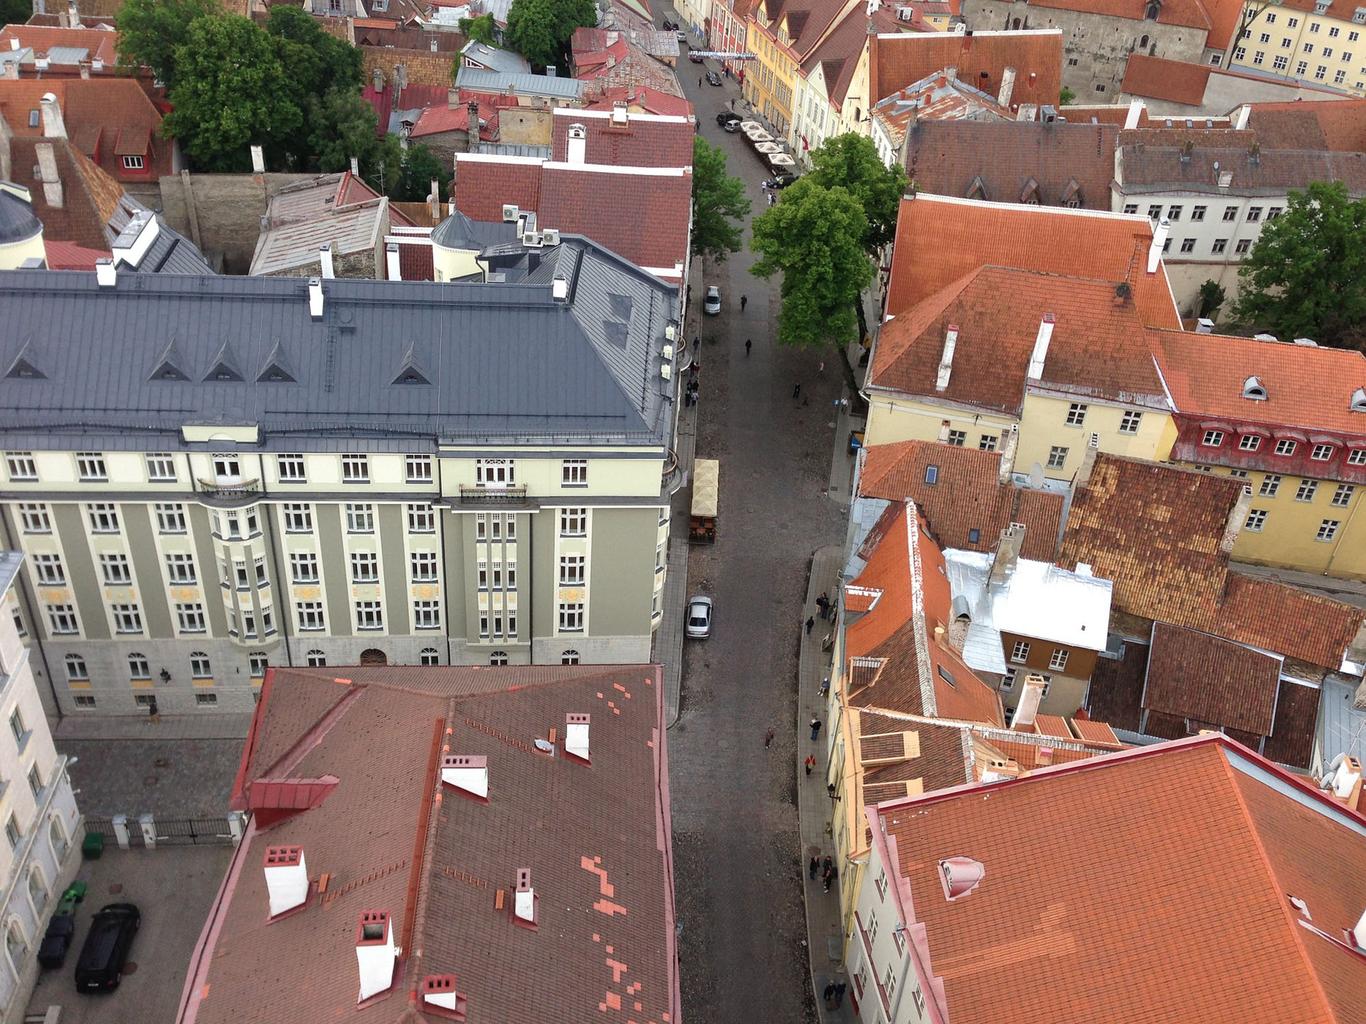 Kinnisvaraturg jätkab Eesti tähtsamates linnades stabiilselt aktiivselt, samas kui mõnel juhul on märgata ehituslubade menetlusaja pikenemist, kirjutab KINNISVA